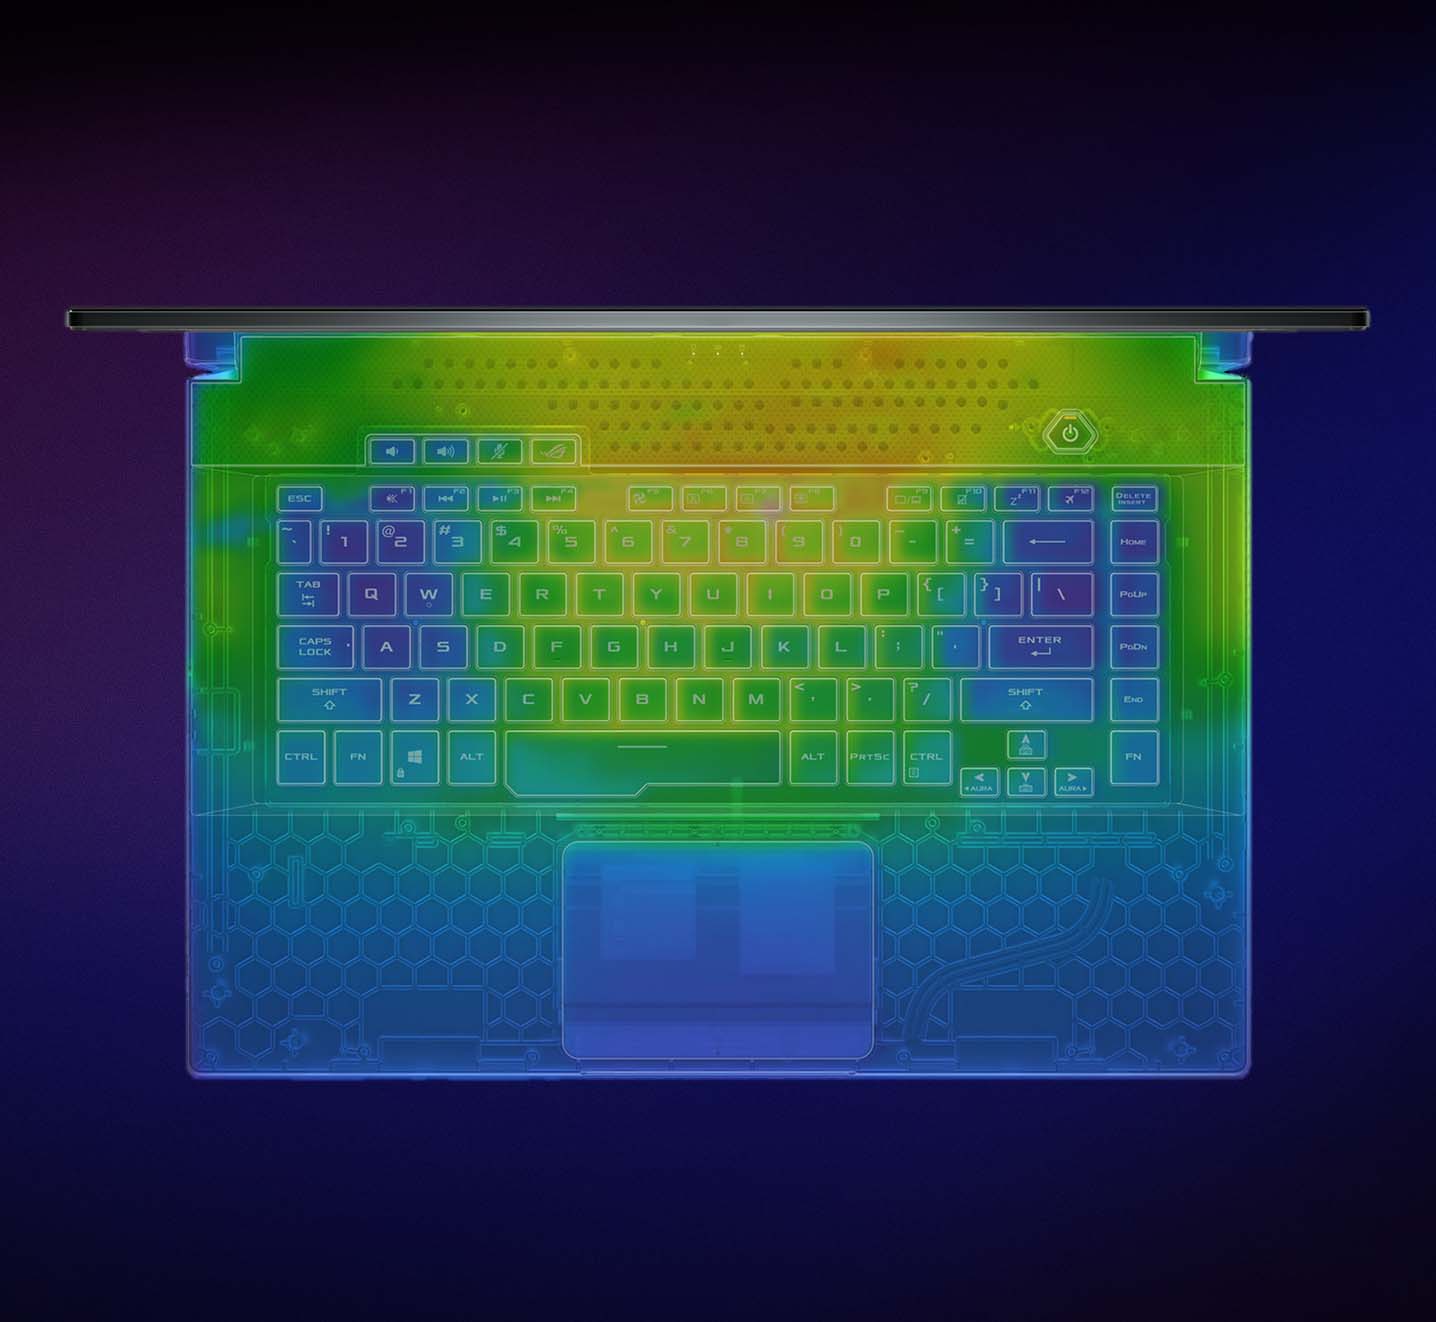 Varmebillede af Strix G17-tastaturet.